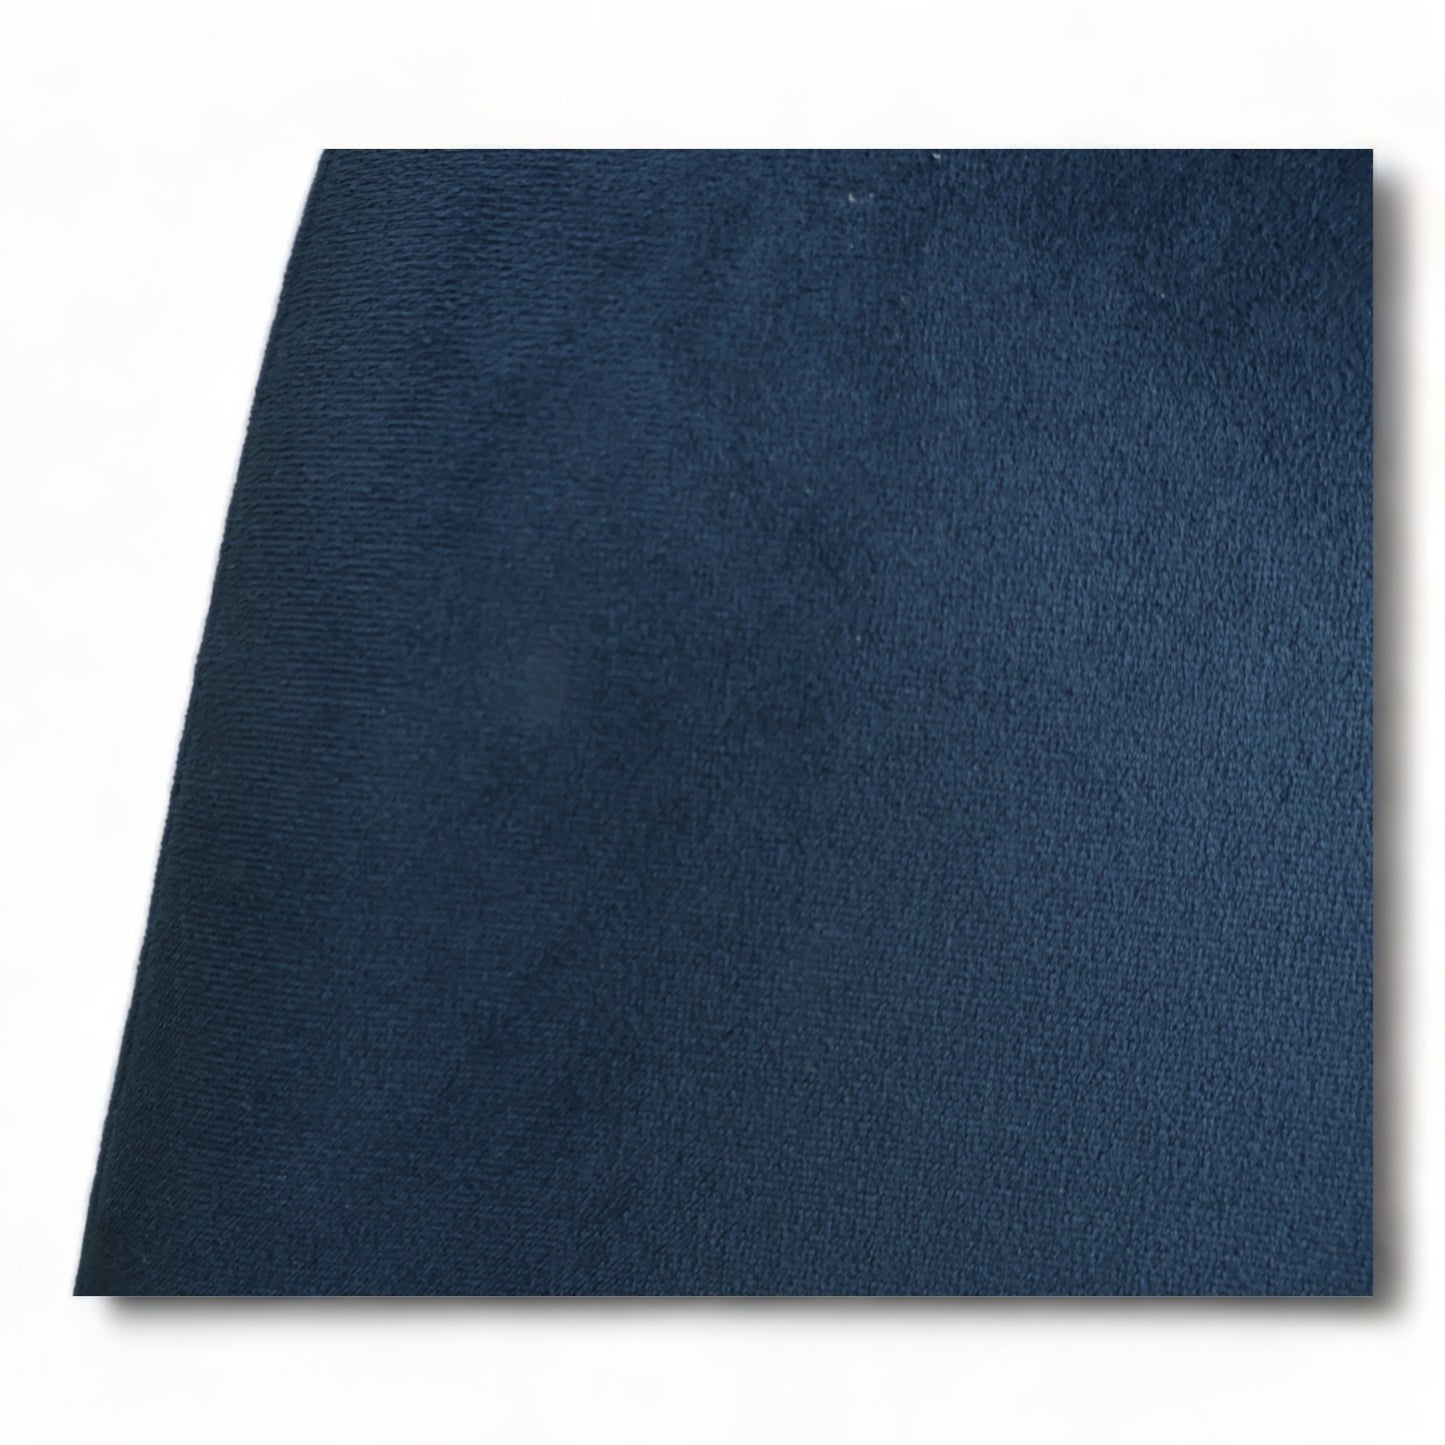 Nyrenset | Enkel spisestol i mørk blå farge